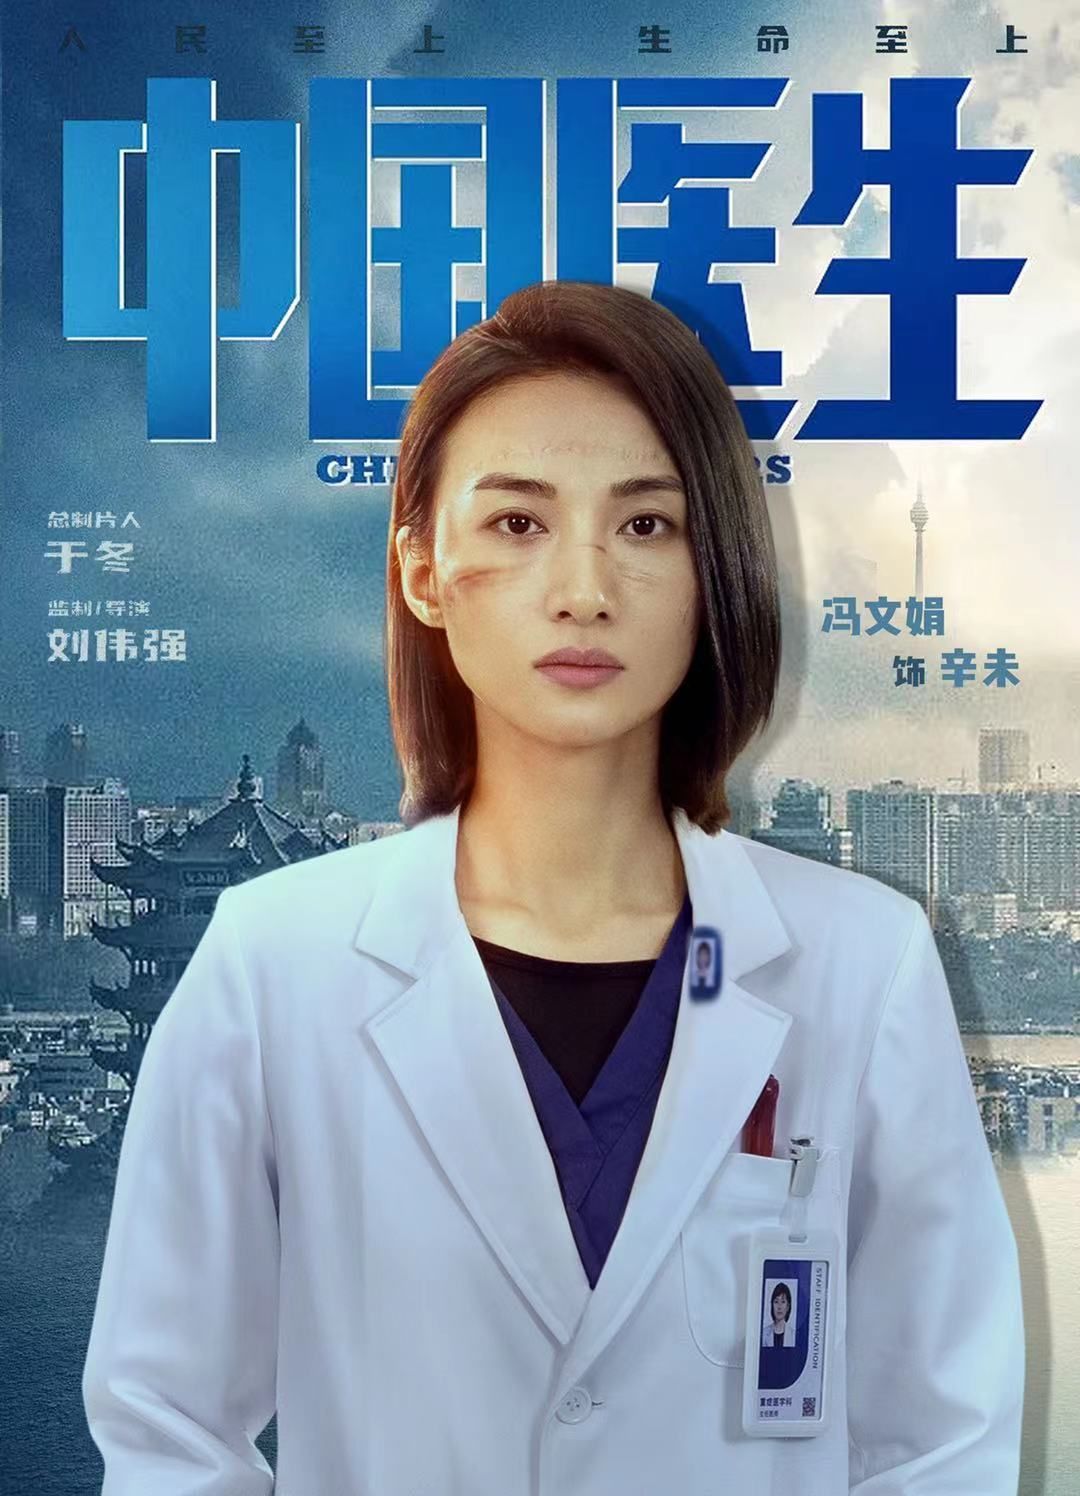 中国医生演员对照表图片